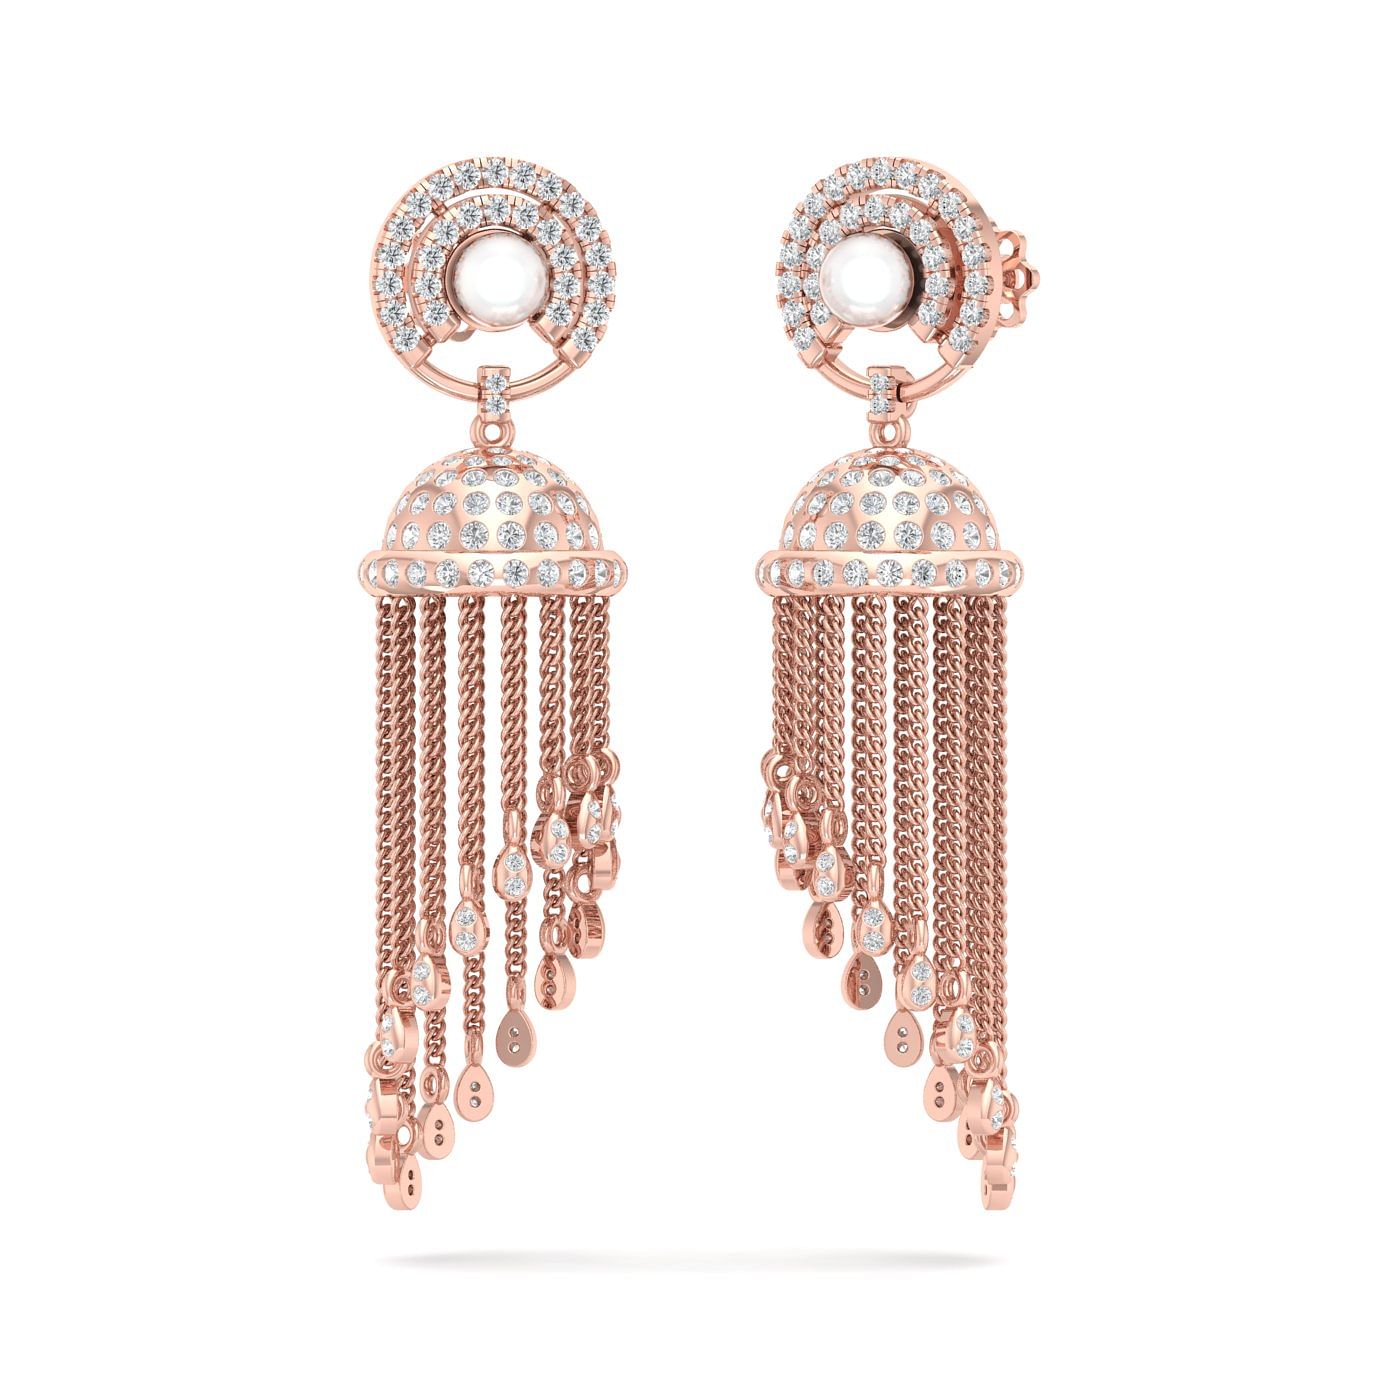 Buy Classic Diamond Drop 14KT Rose Gold Earrings Online | ORRA